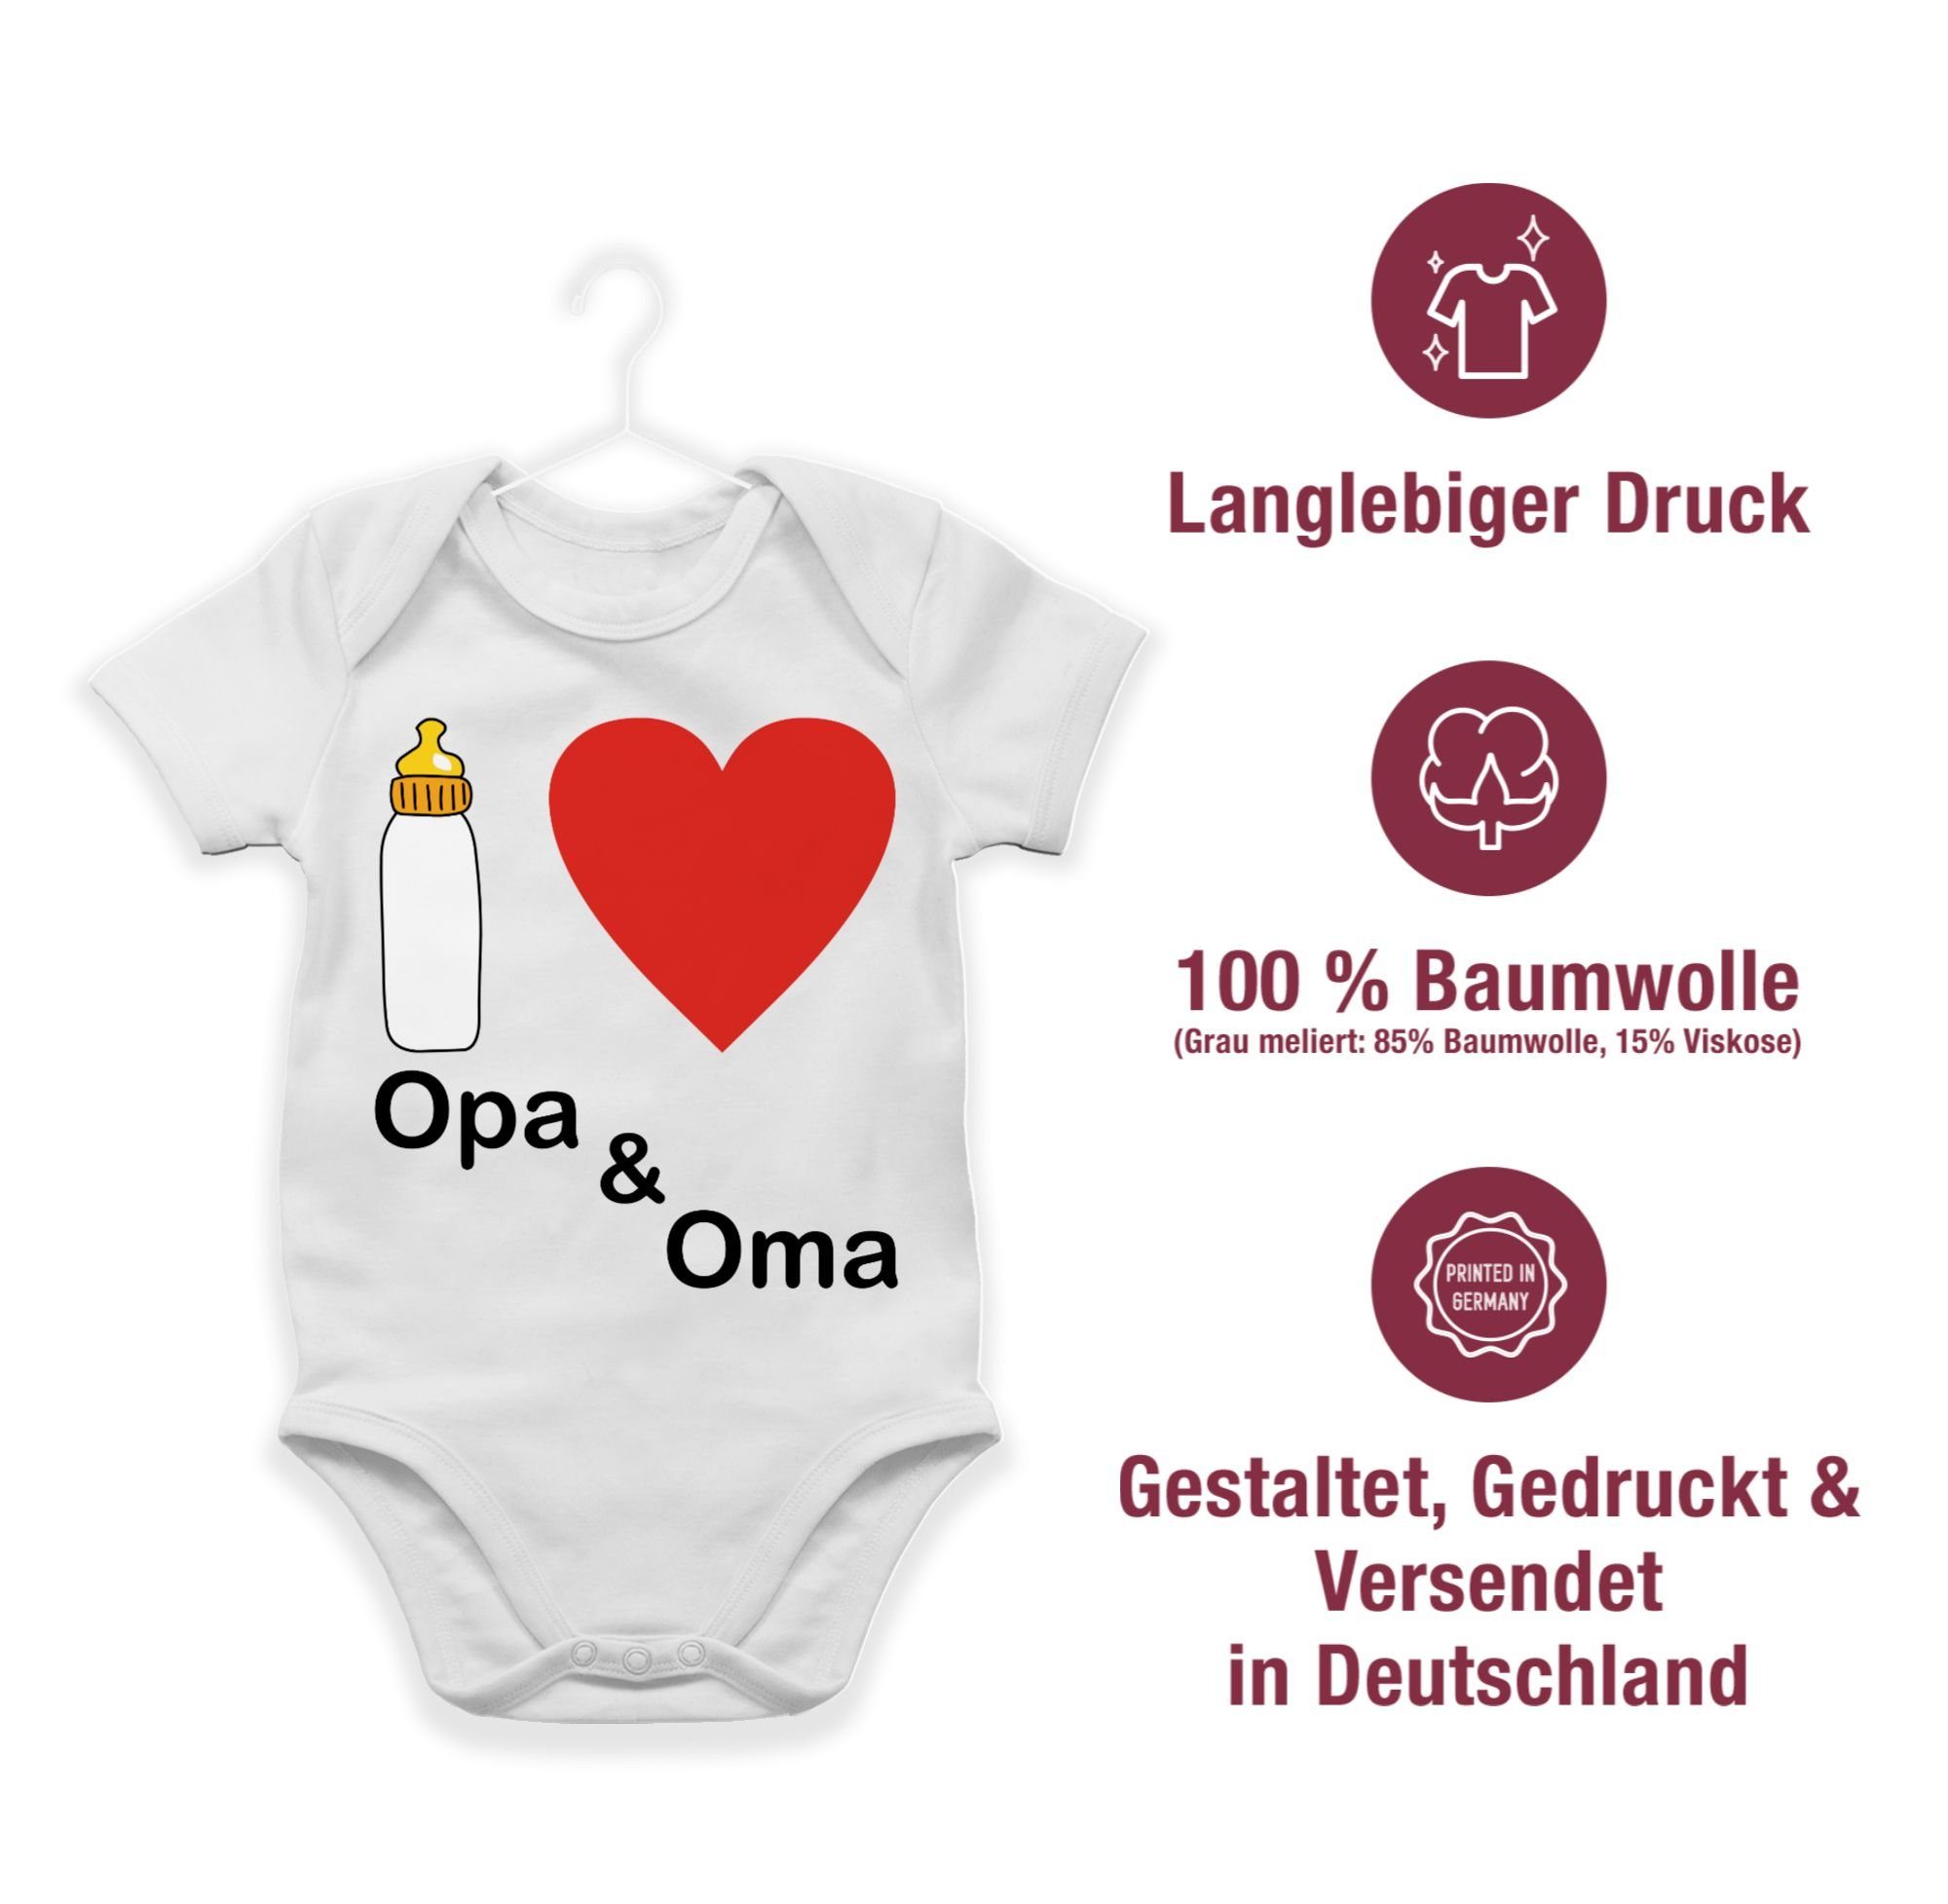 Shirtracer Shirtbody Nuckelflasche Oma Aktuelle Baby I 1 und Weiß Opa Trends love